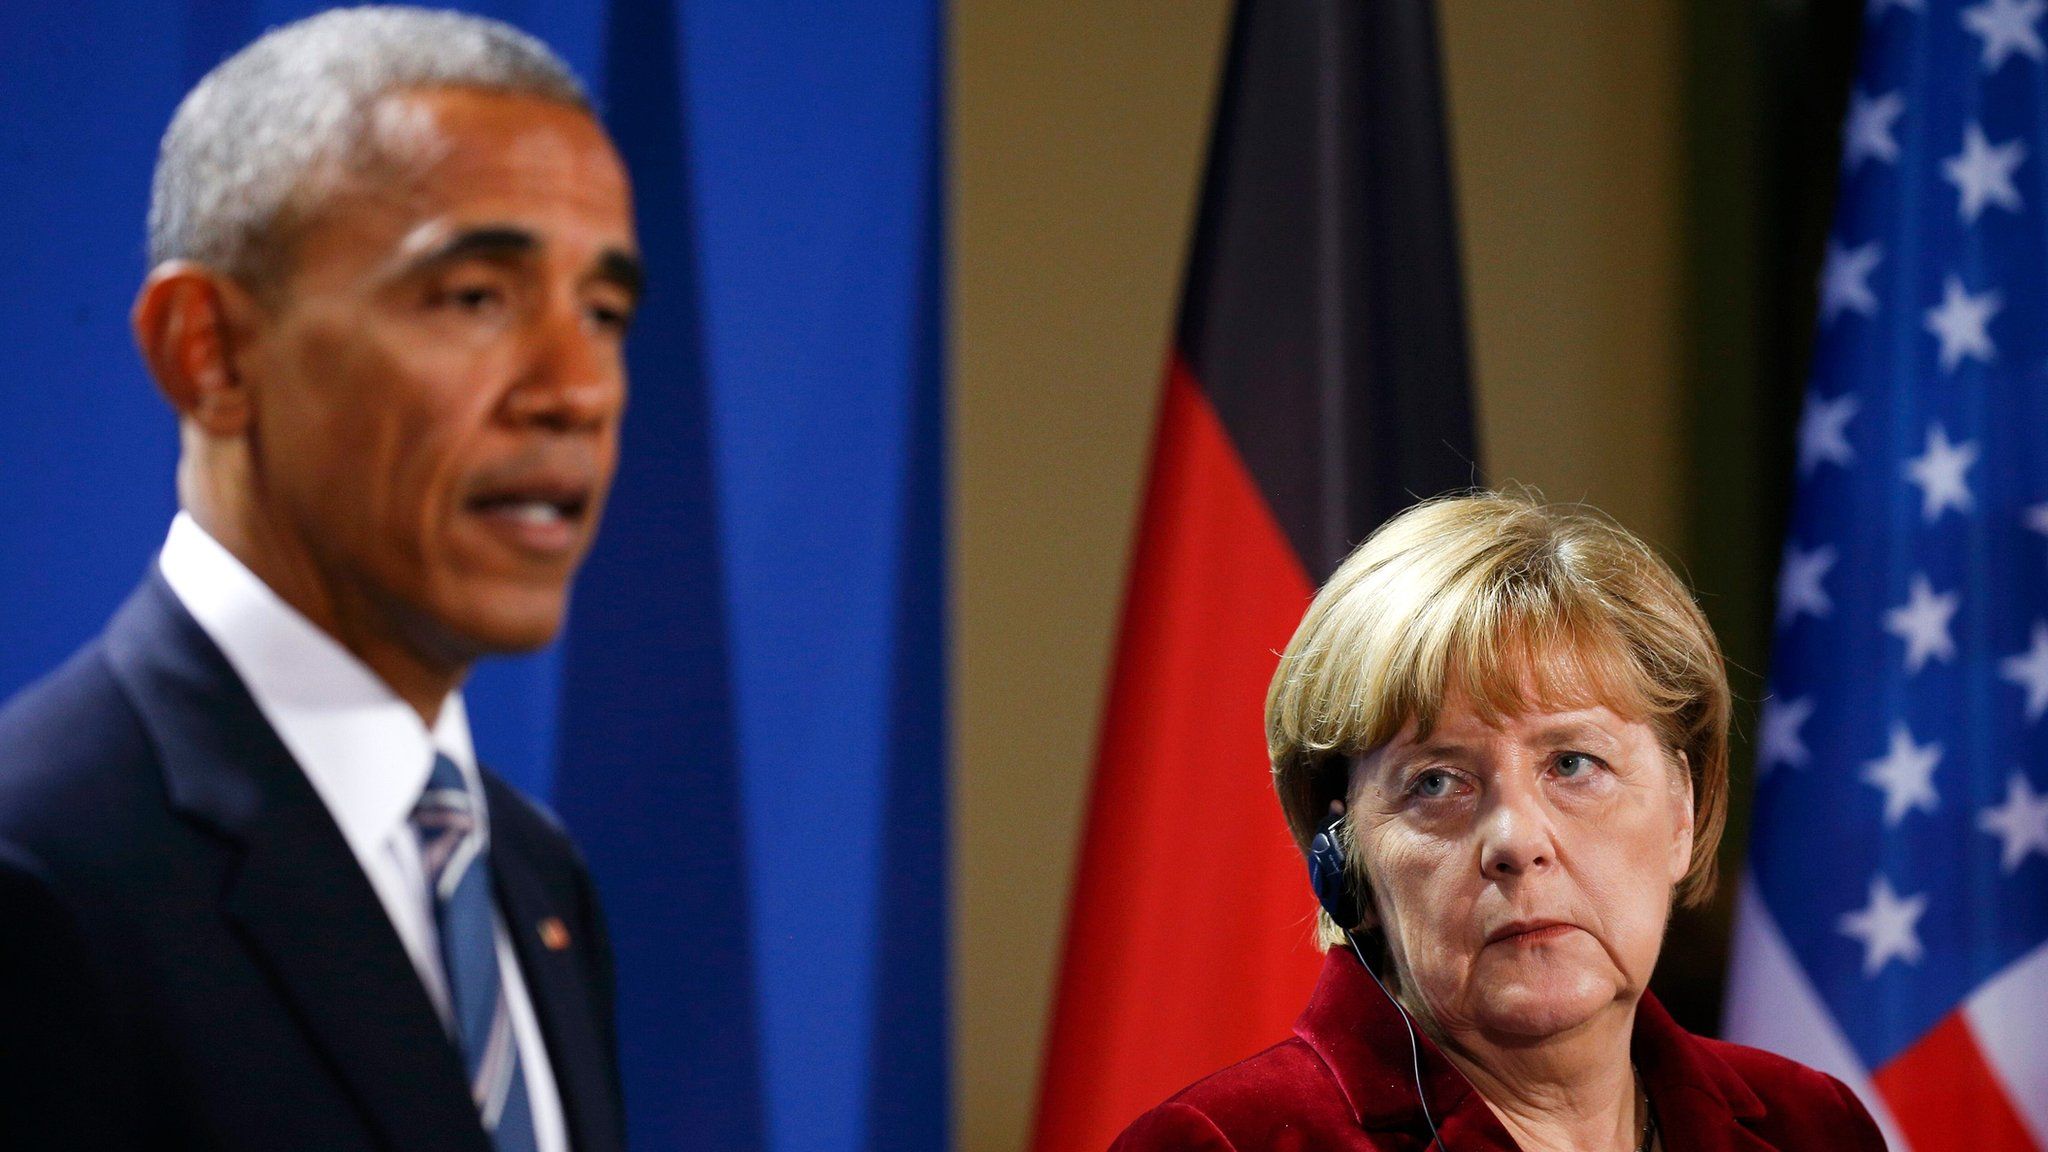 Obama and Merkel in Berlin on 17 November 2016